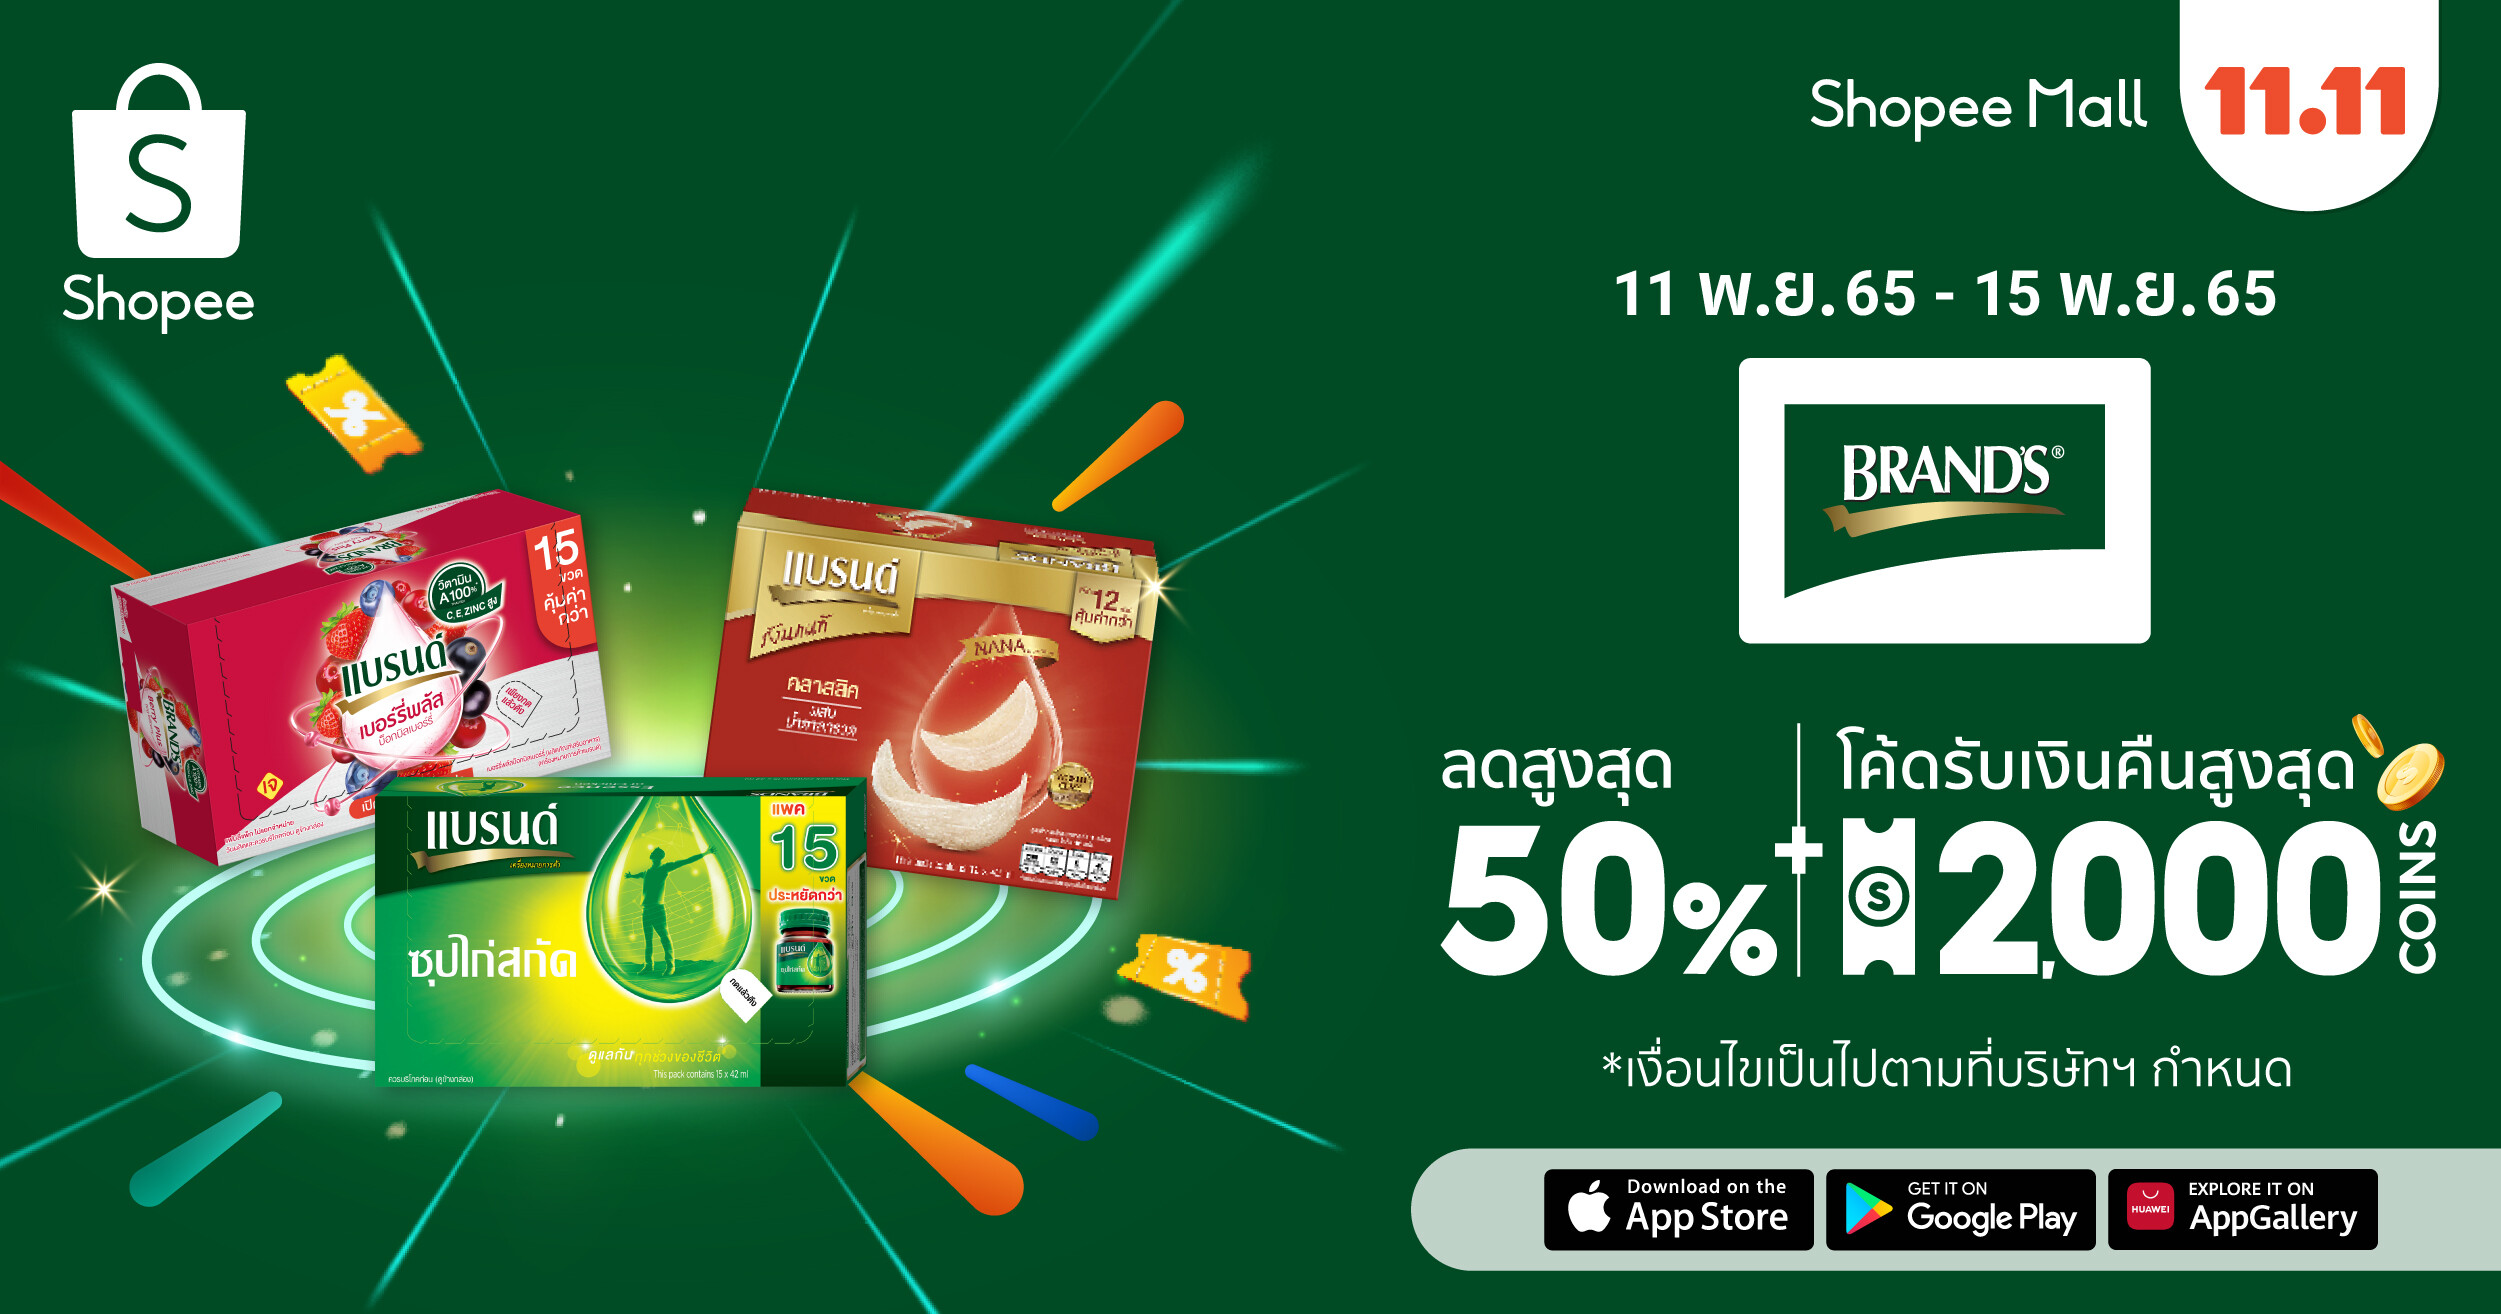 แบรนด์ ร่วมส่งมอบสุขภาพที่ดีให้กับคนไทย พาเหรดสินค้ากว่า 100 รายการ เสิร์ฟพร้อมโปรโมชั่นเด็ดและดีลสุดพิเศษ ในมหกรรมช้อปปิ้งสุดยิ่งใหญ่ Shopee 11.11 ลด ใหญ่ มาก